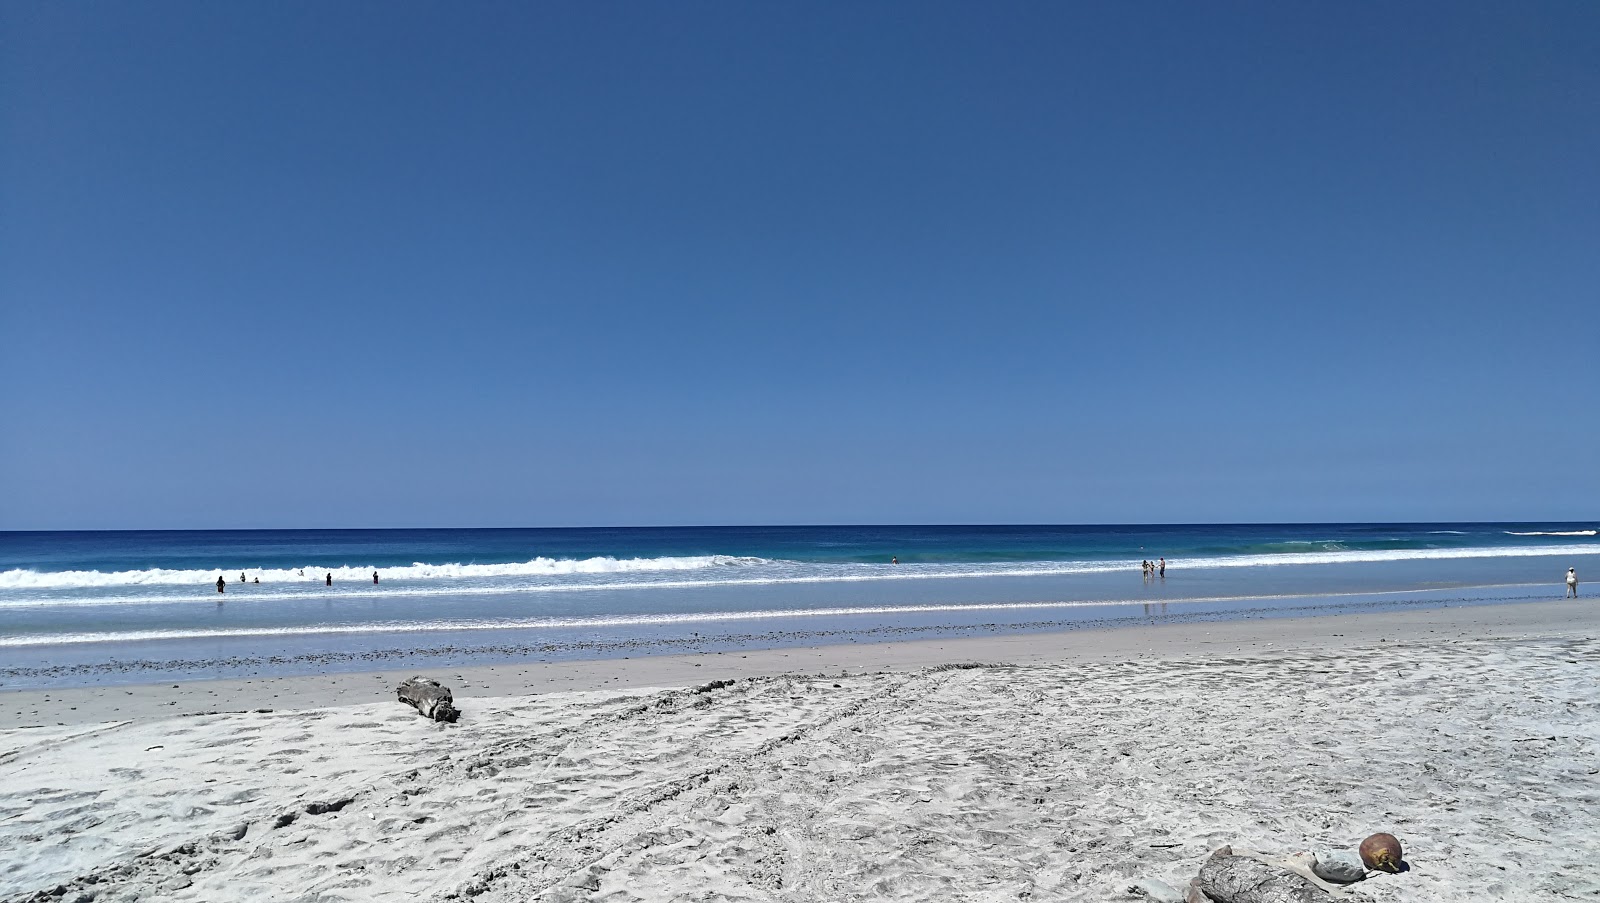 Playa Barrigona'in fotoğrafı çok temiz temizlik seviyesi ile